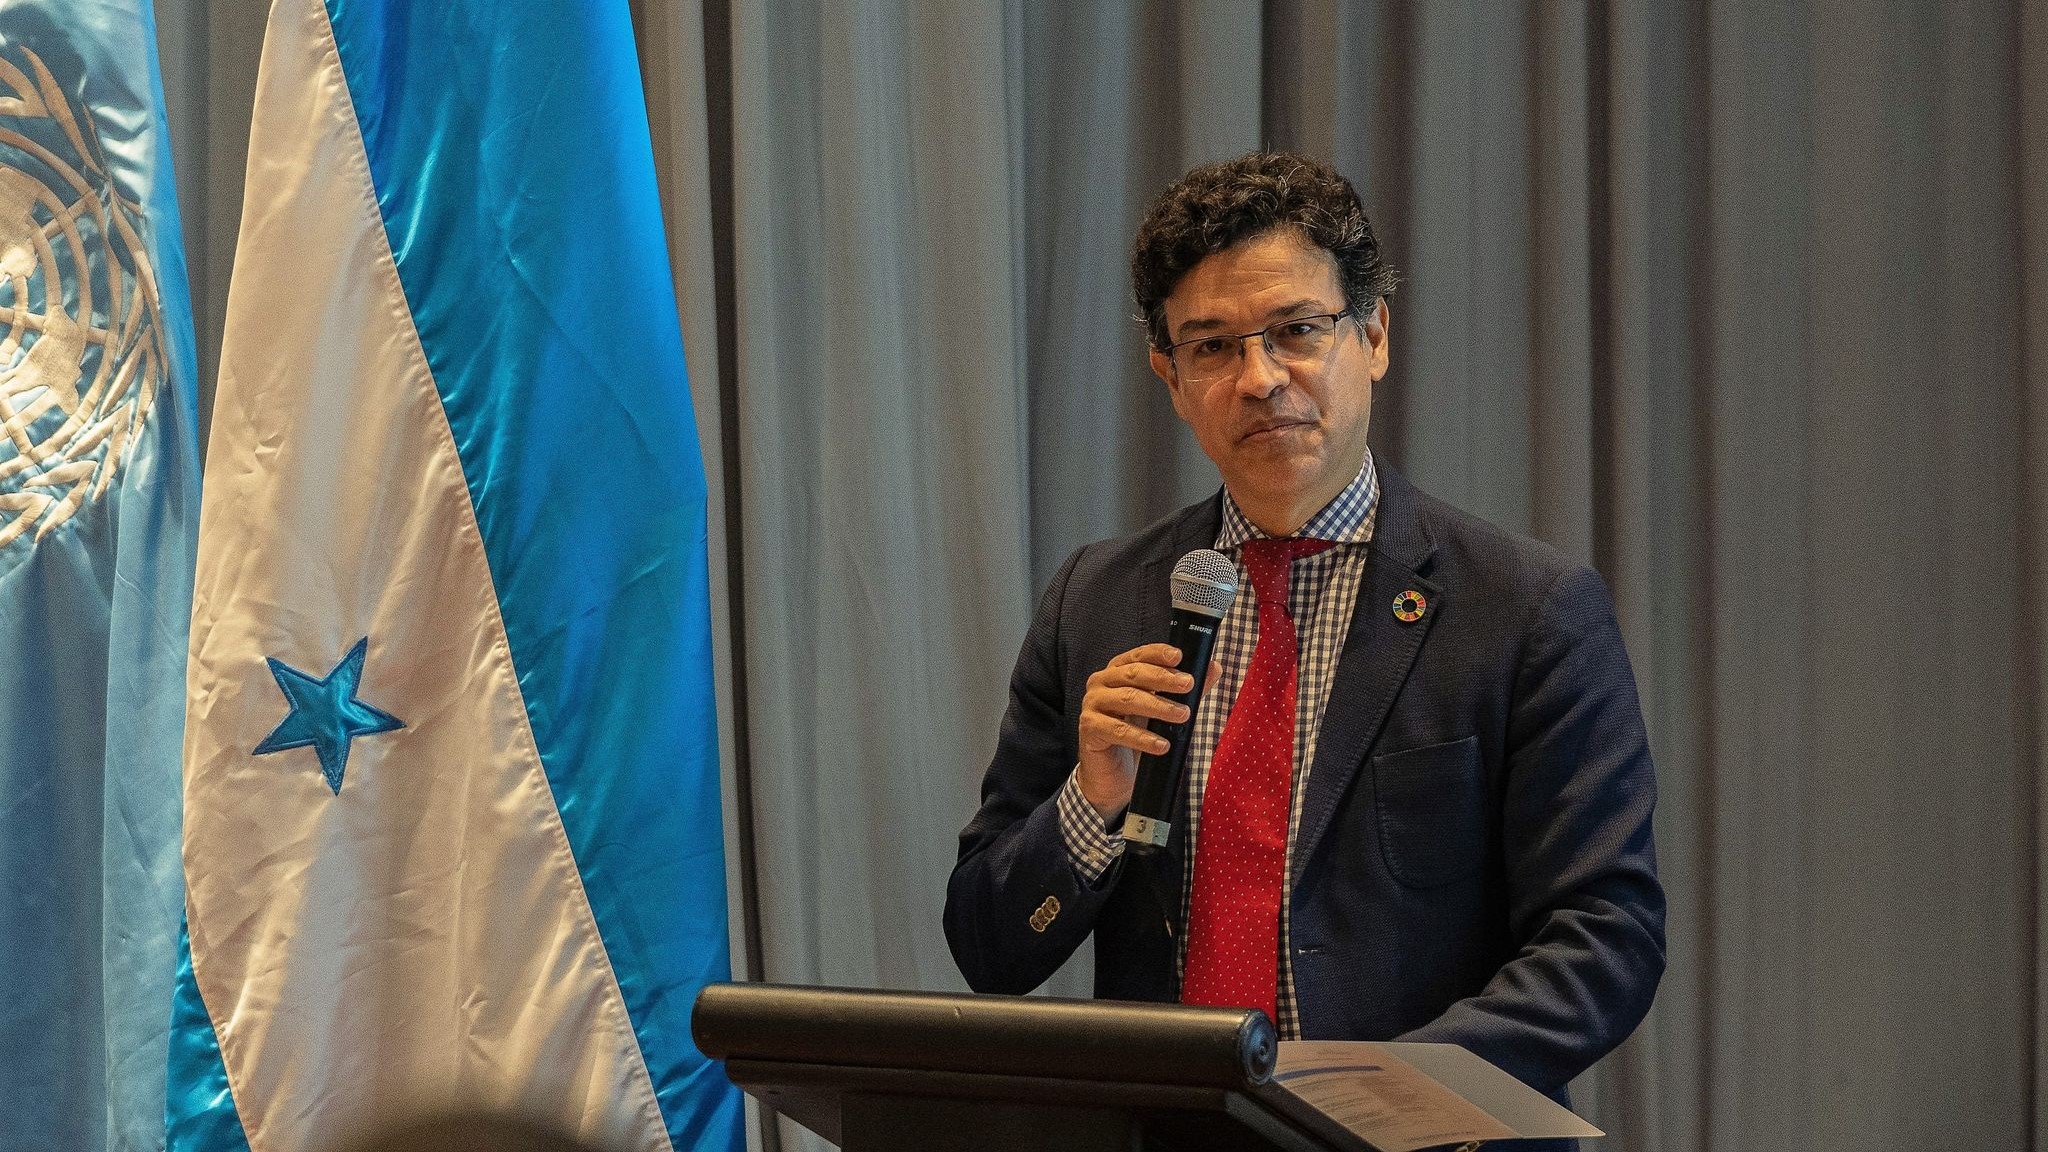 Gobierno de la Presidenta Xiomara Castro sigue los principios de la Nueva Agenda Urbana: Tomás Vaquero 